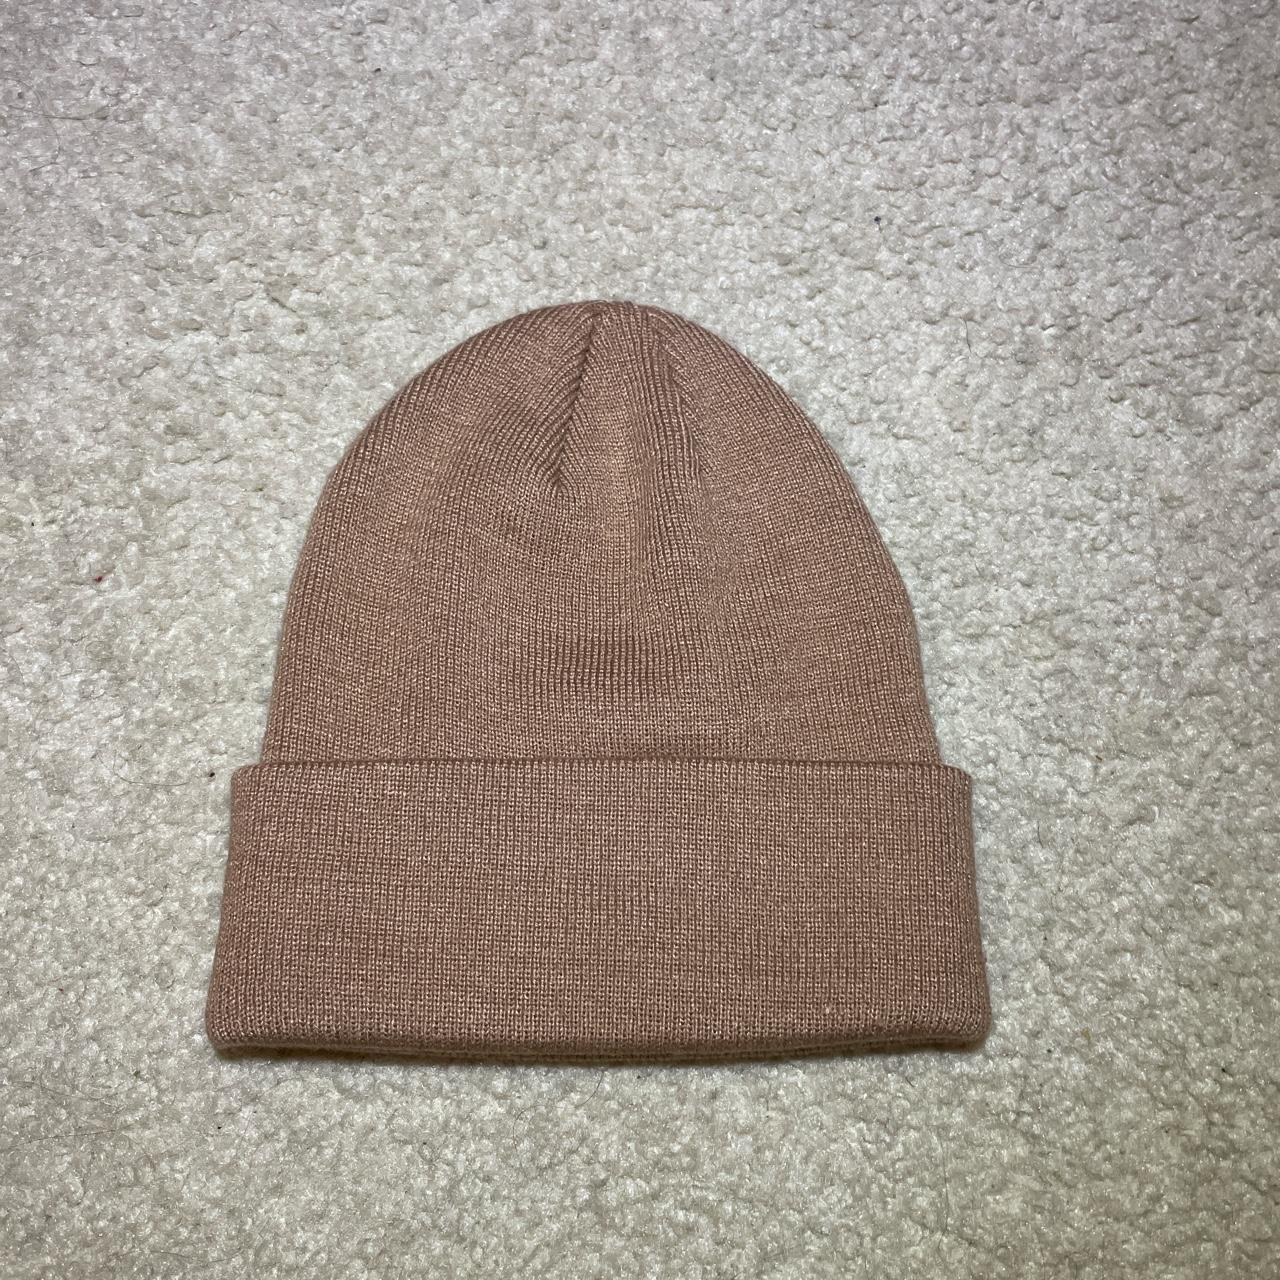 PacSun Men's Hat (2)